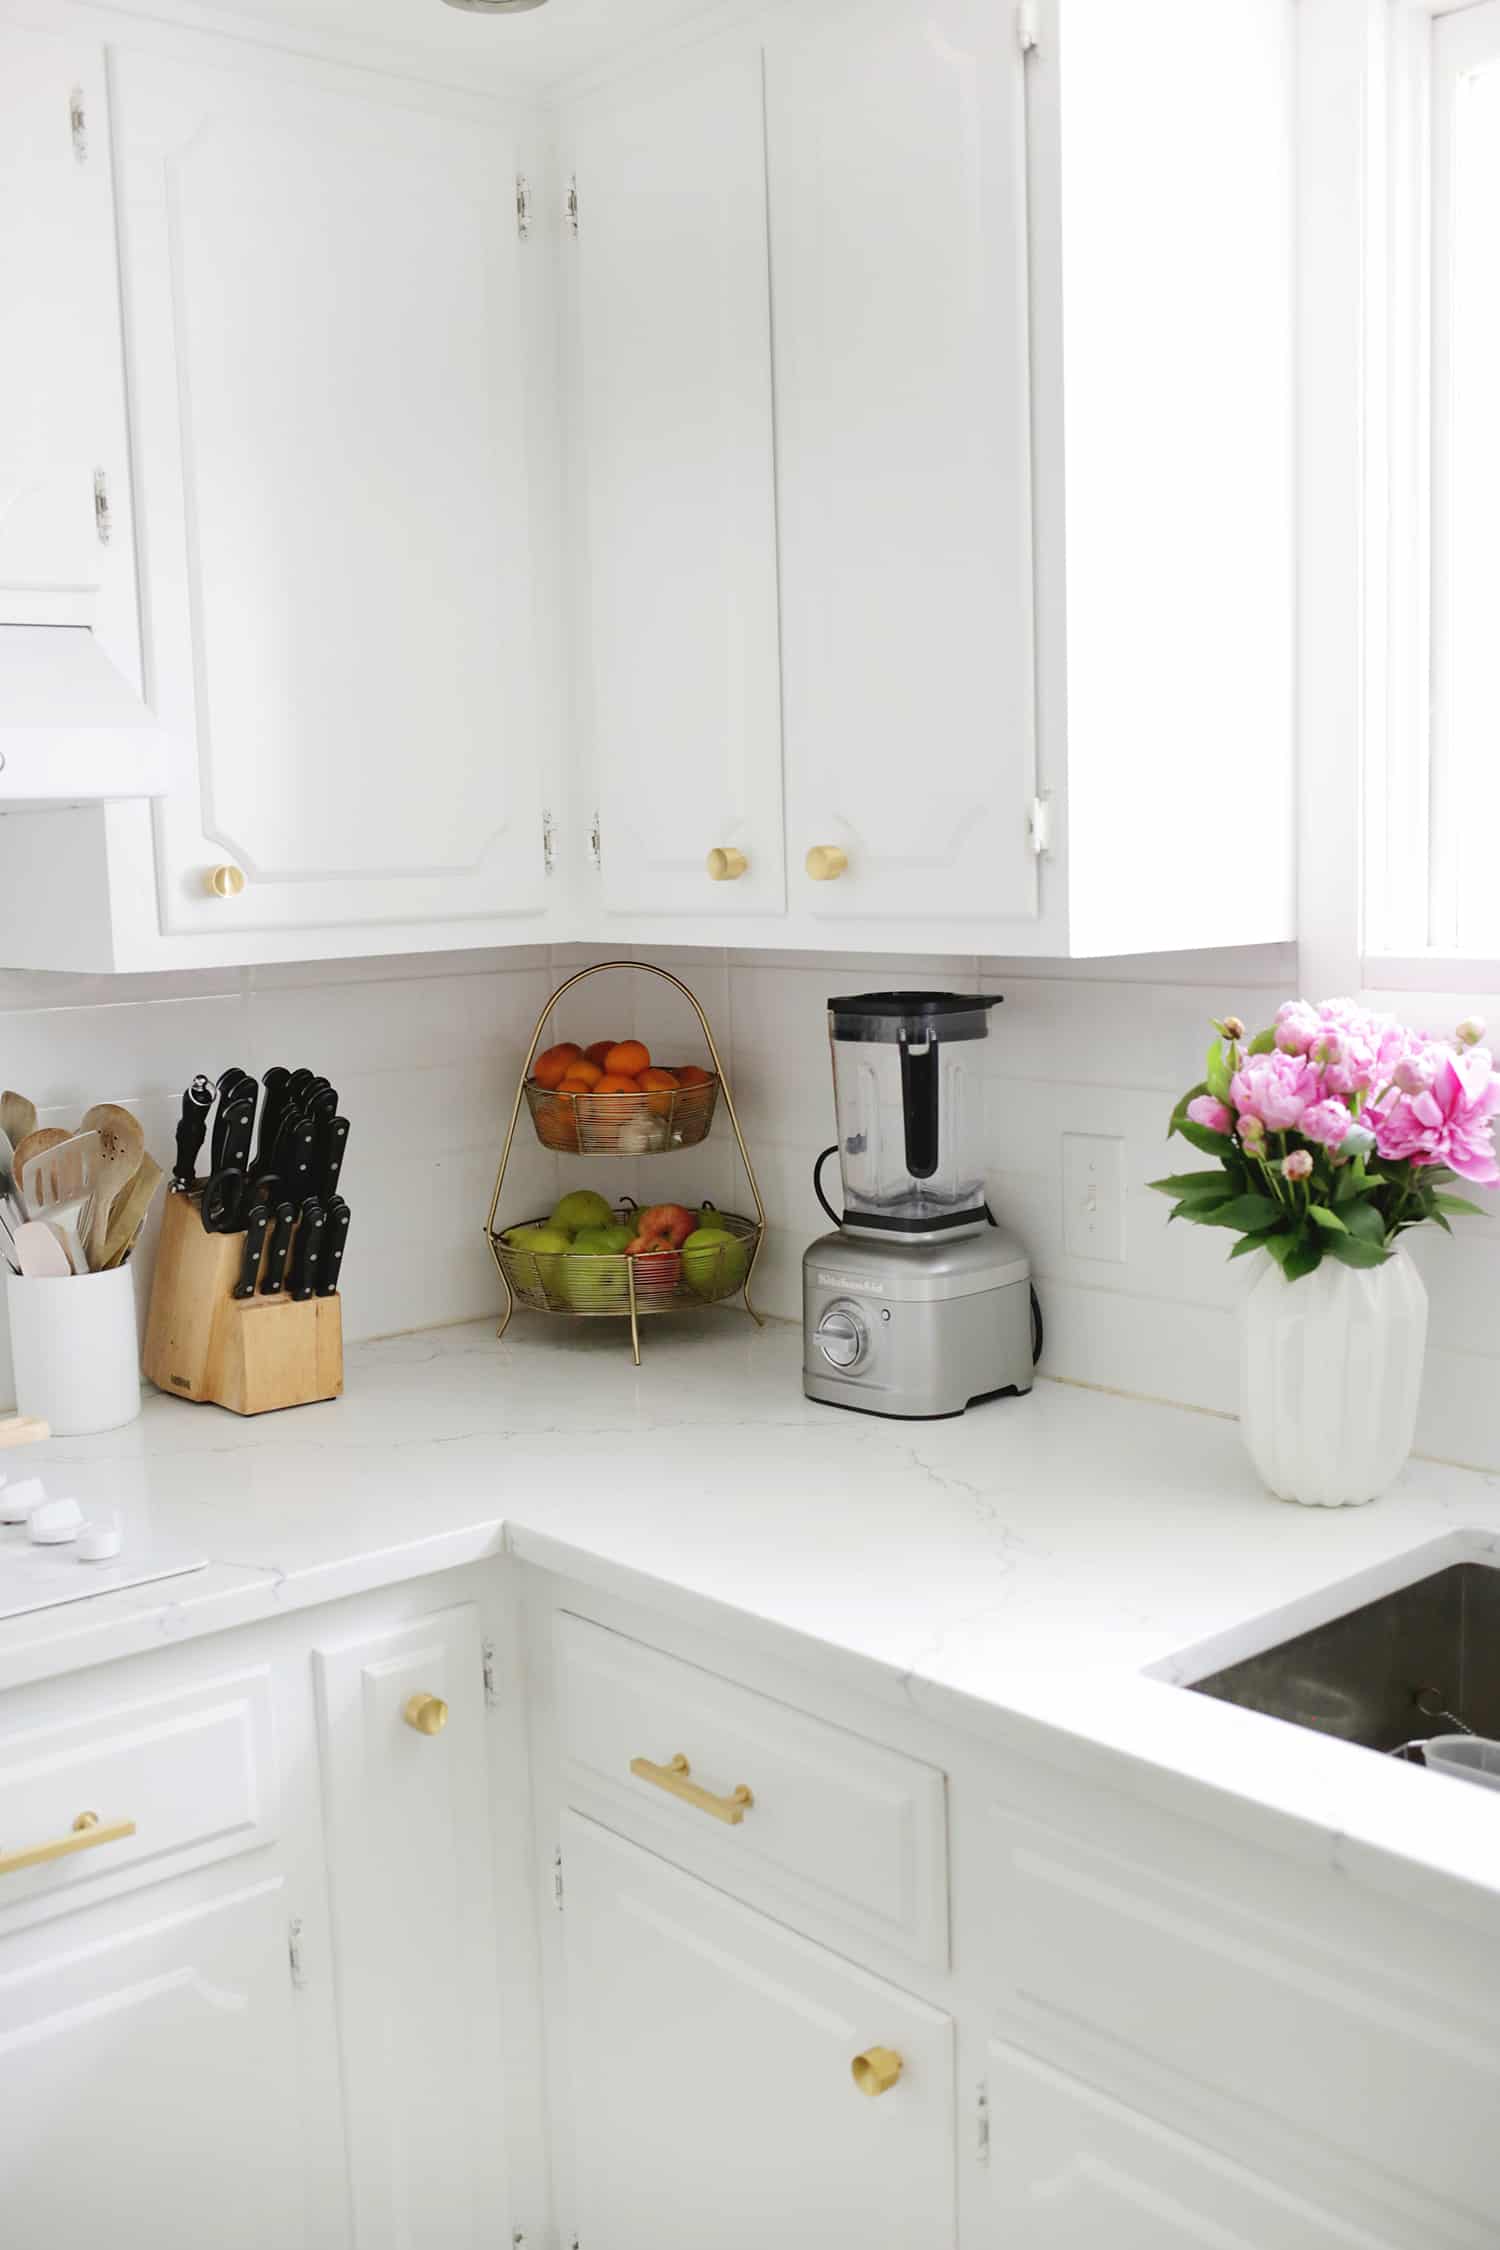 vitt kök med knivar, frukt, mixer och blommor i en vas på vit bänkskiva